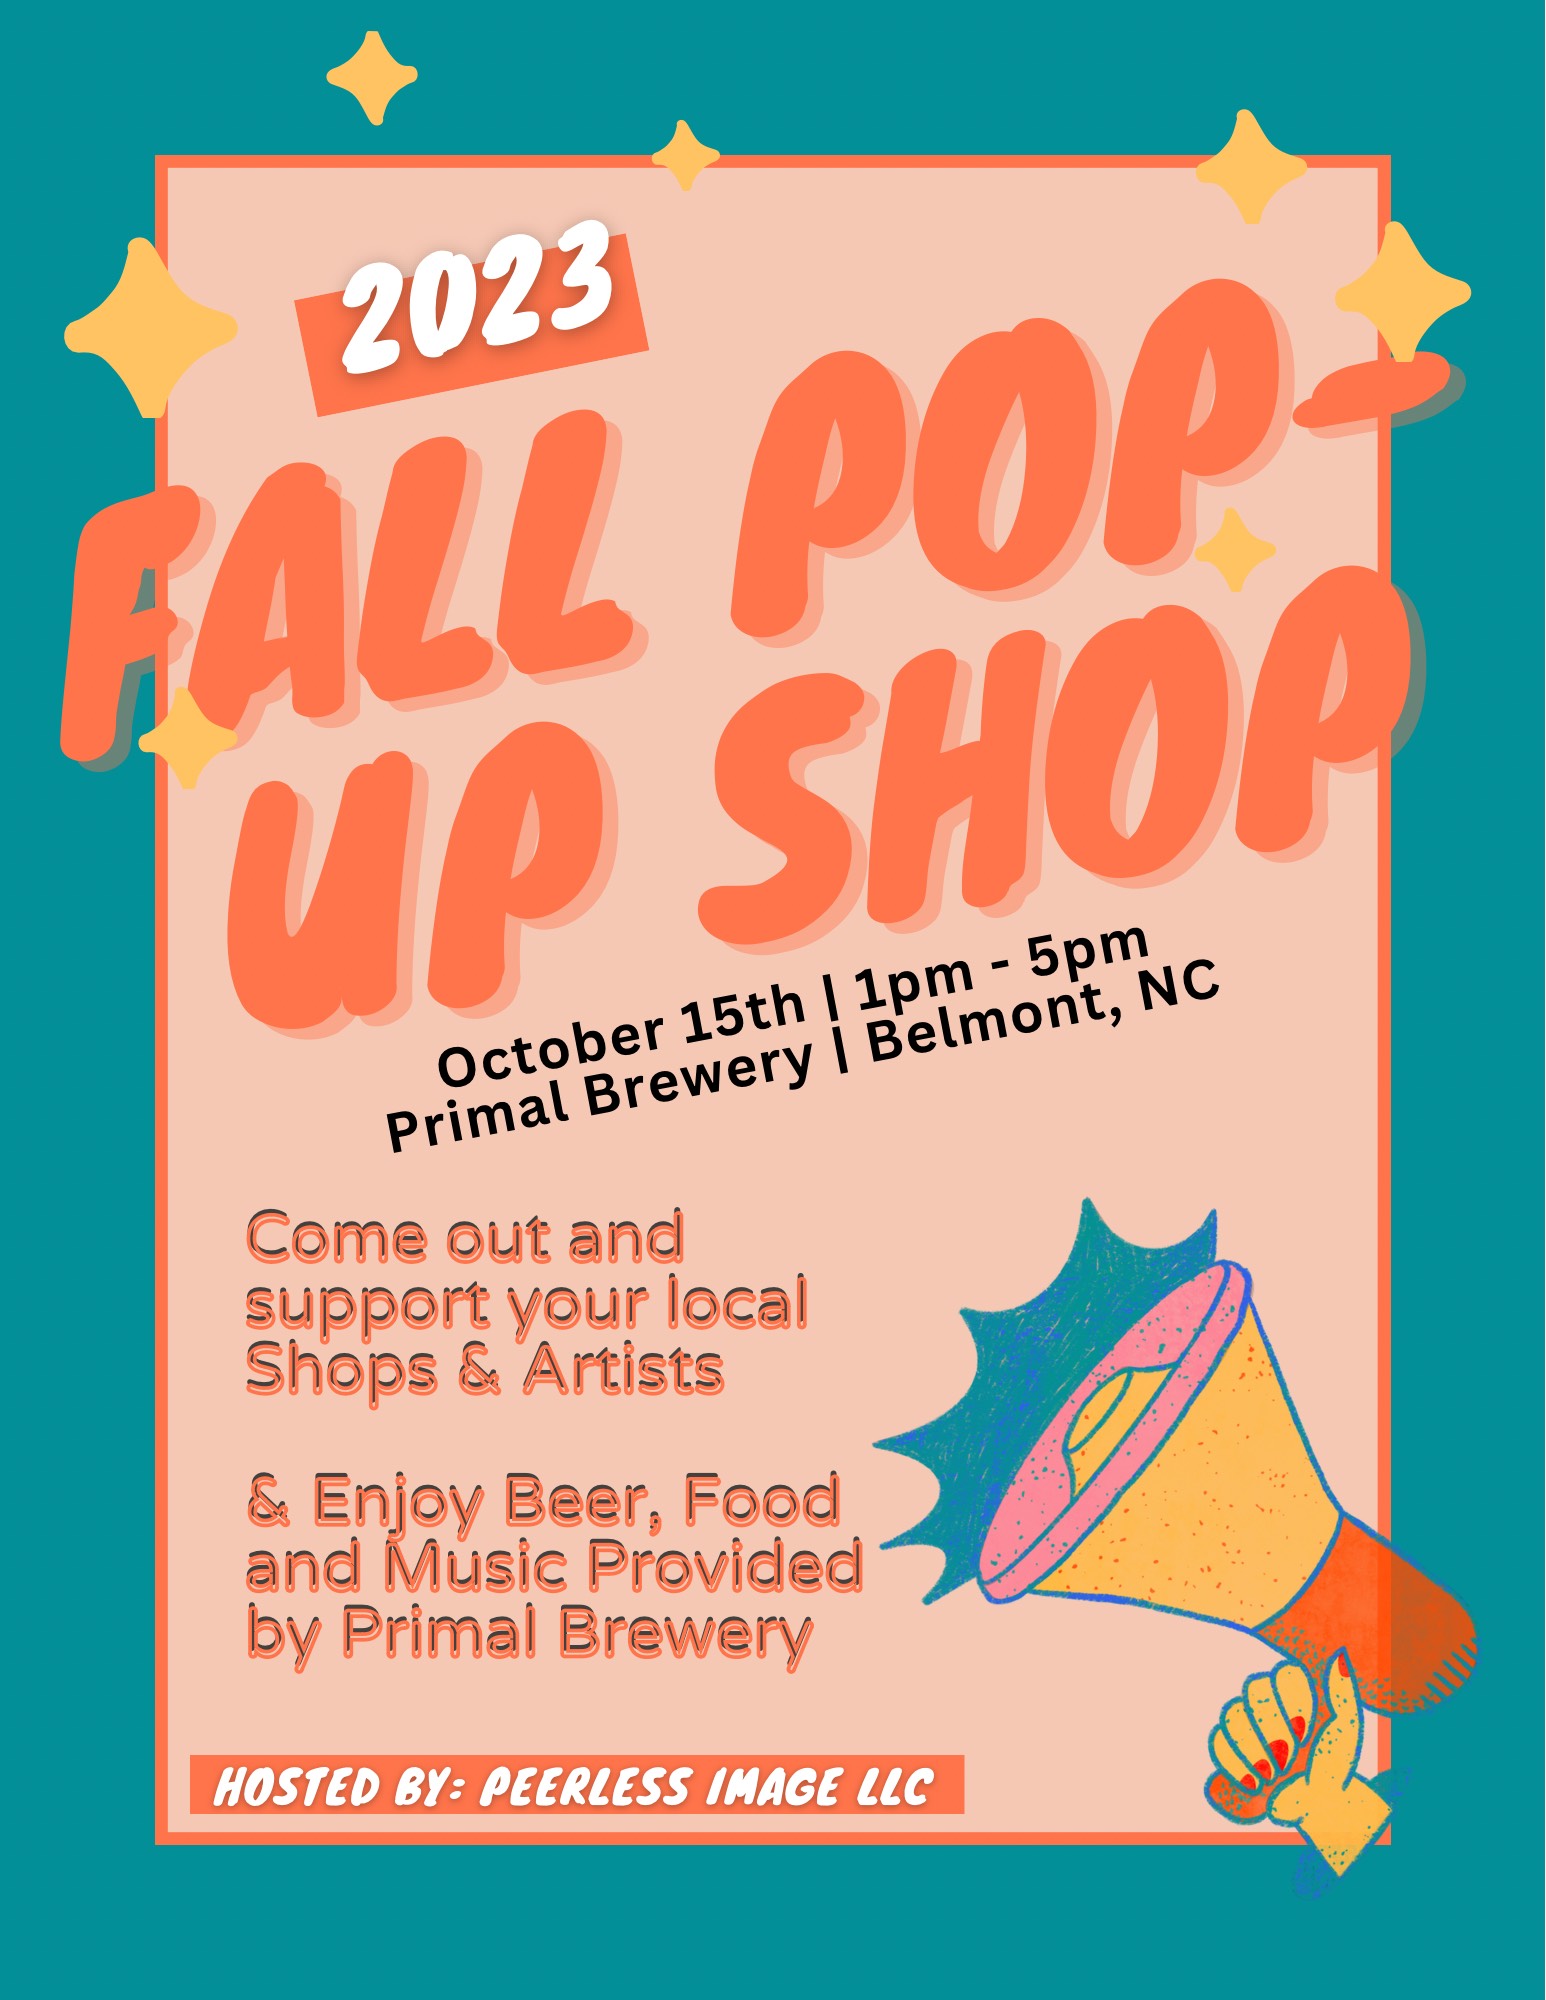 Fall Pop Up Shop!